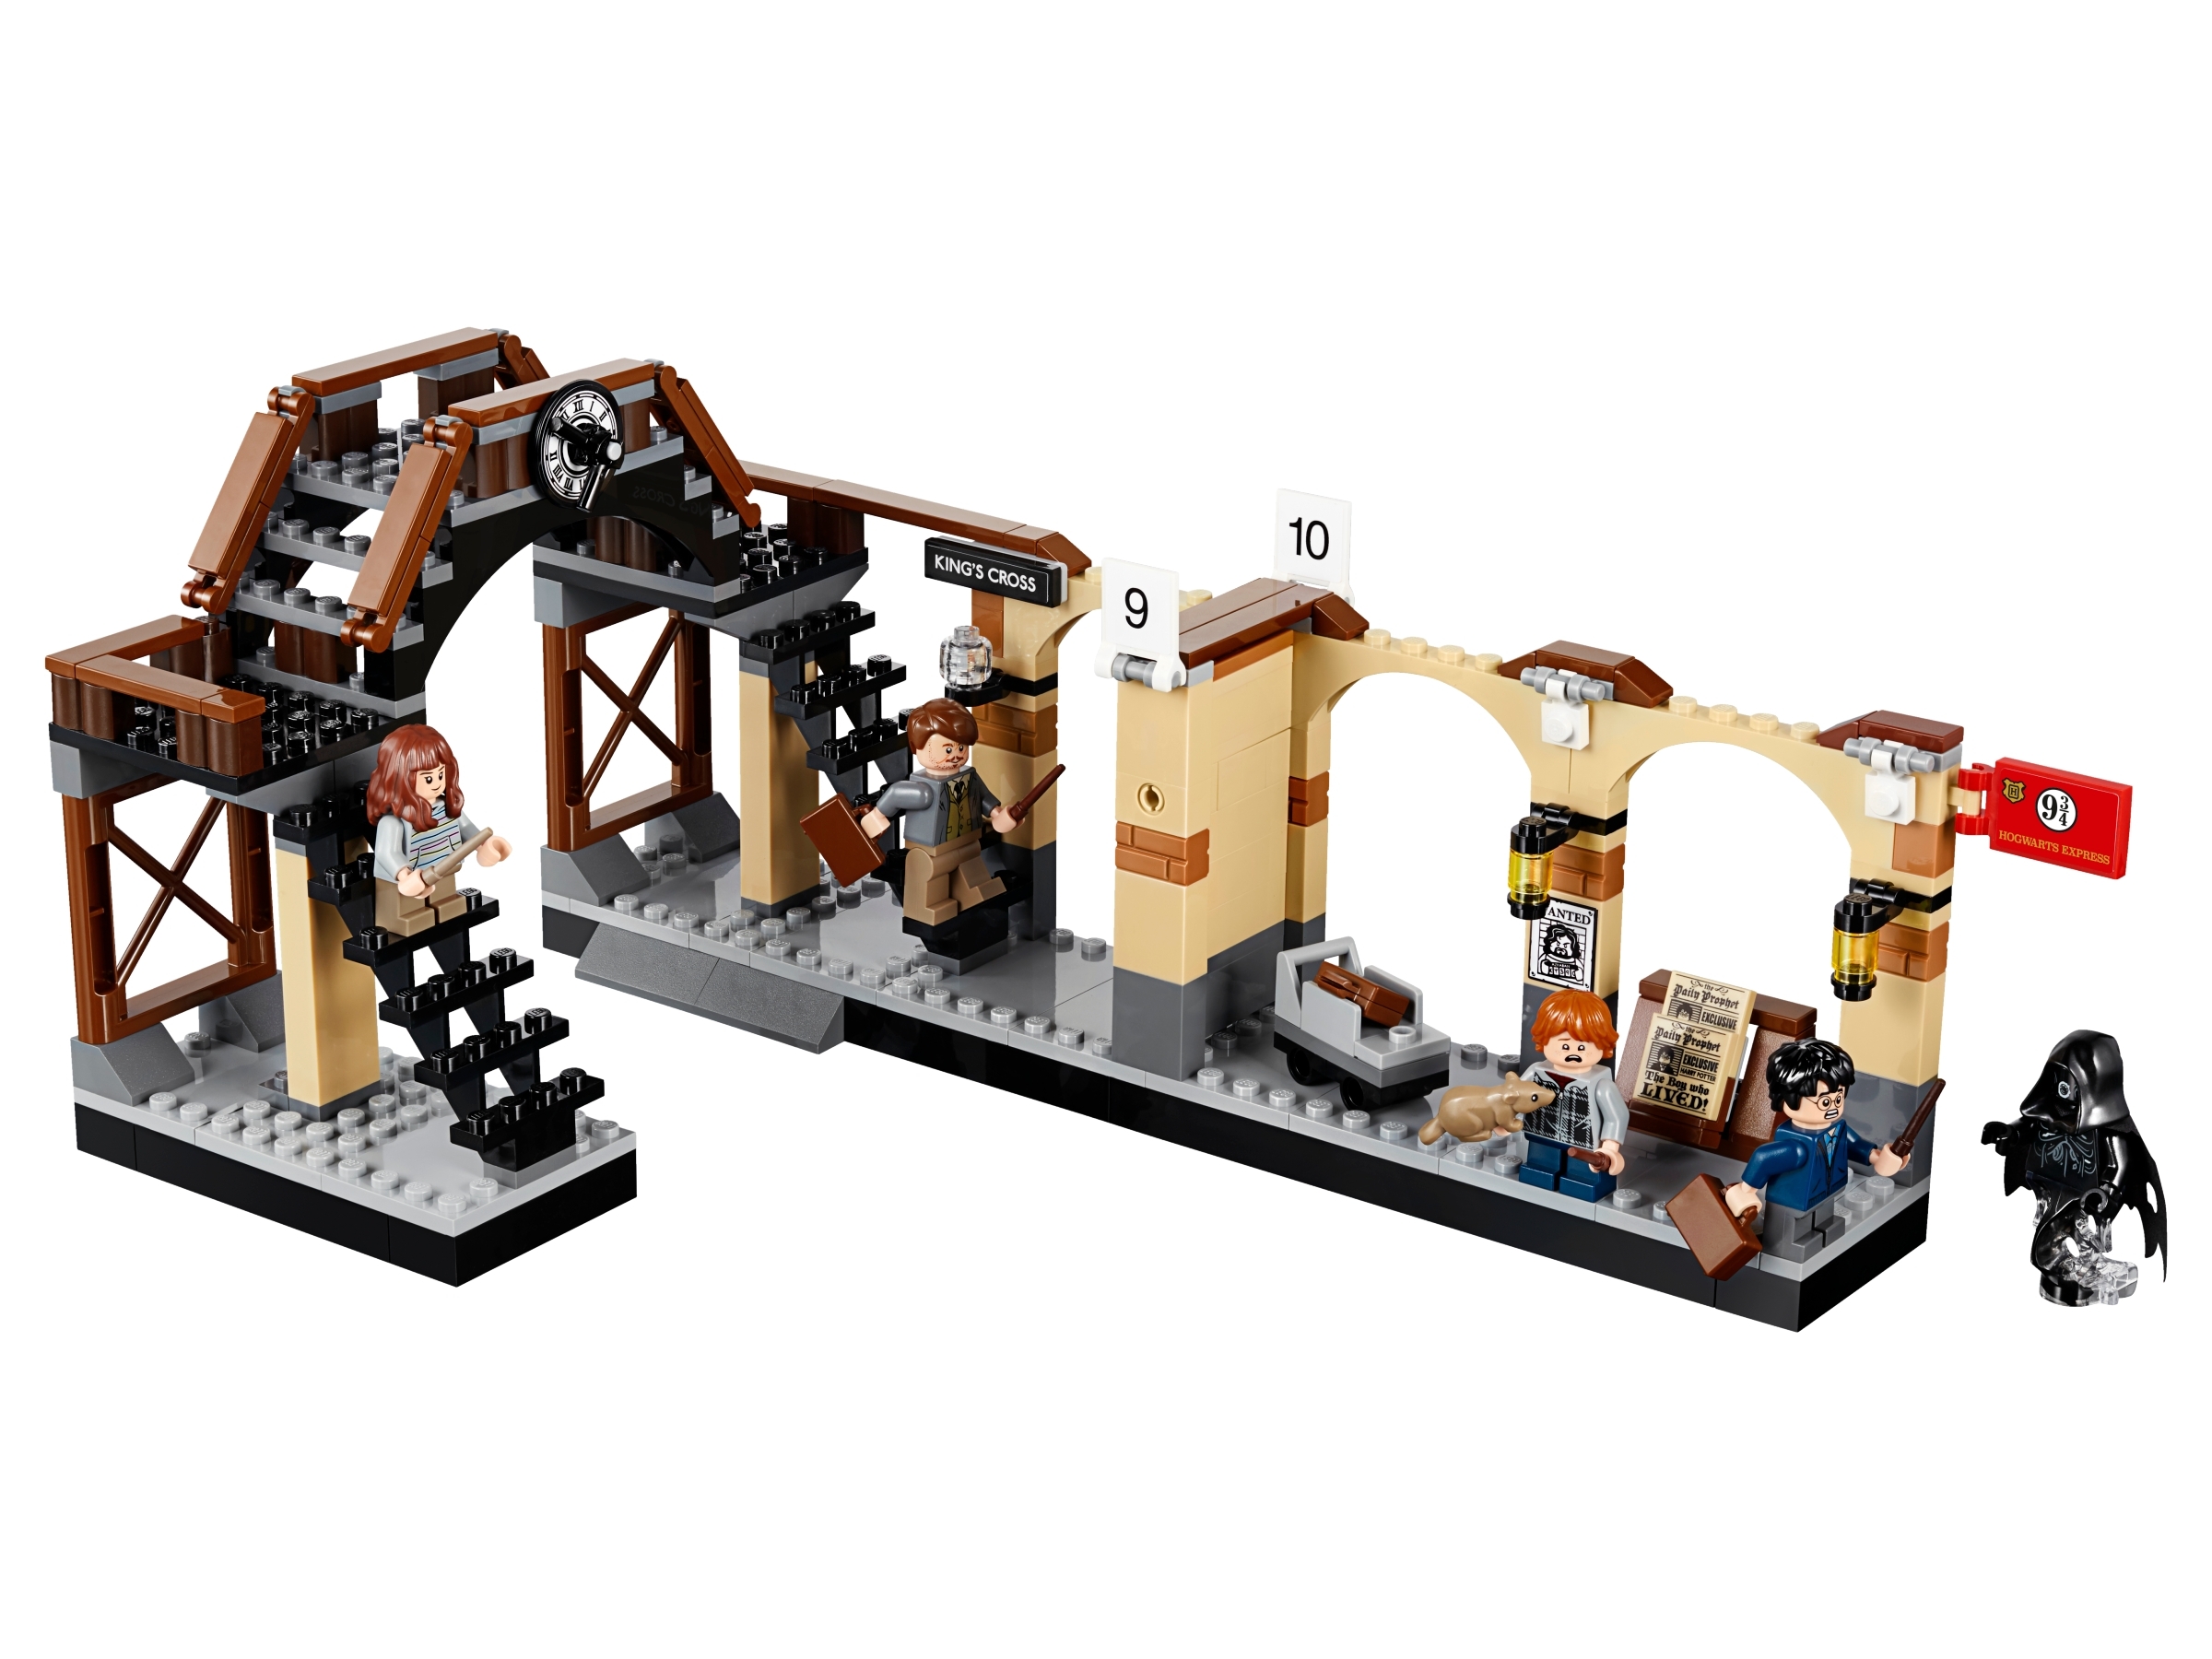 LEGO® Harry Potter Hogwarts Express Building Toy, 801 pc - Kroger